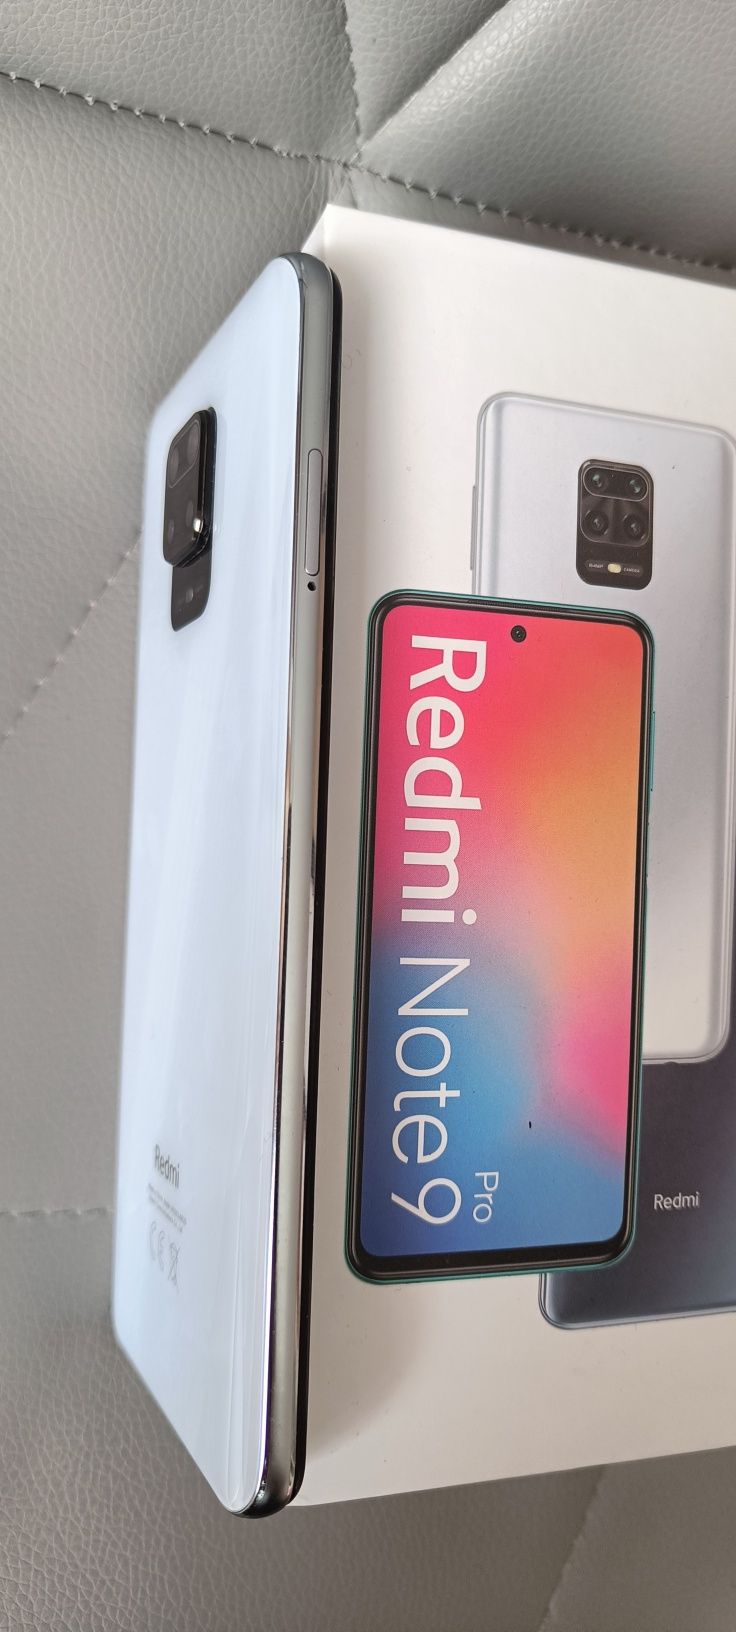 Xiaomi Redmi Note 9 Pro 6+1/64GB